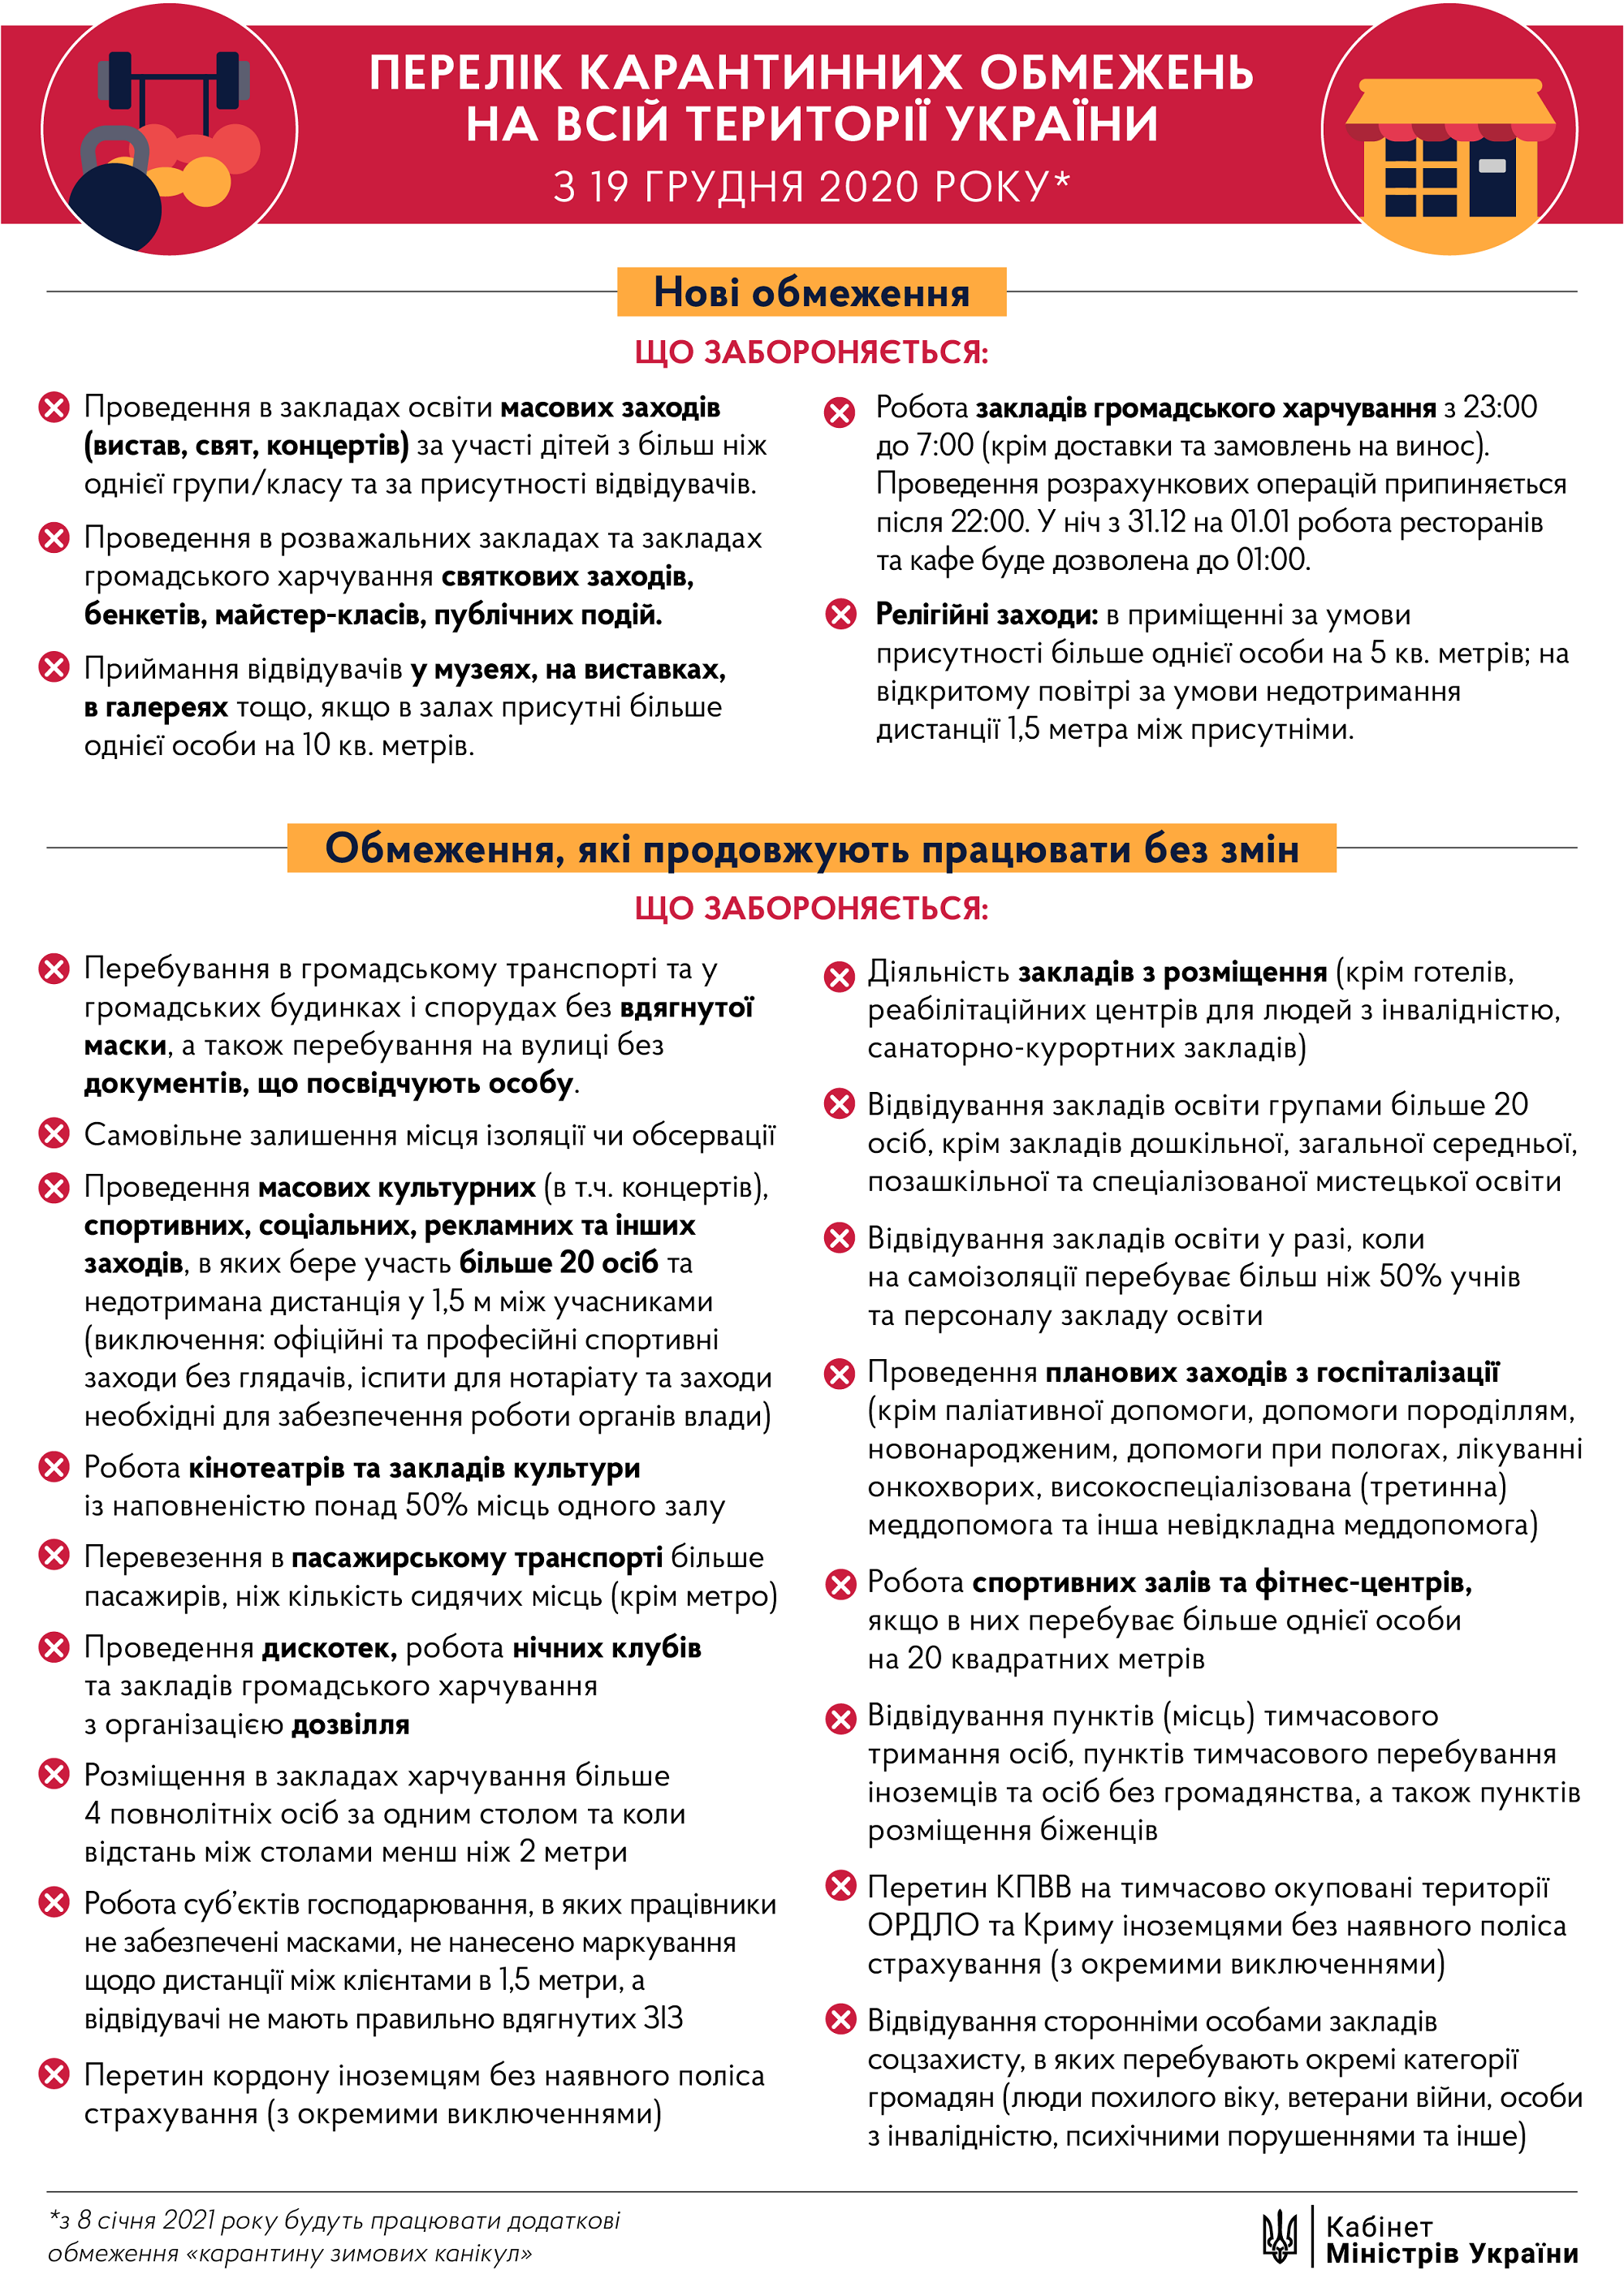 Новые правила адаптивного карантина в Украине: Кабмин опубликовал список ограничений - 1 - изображение